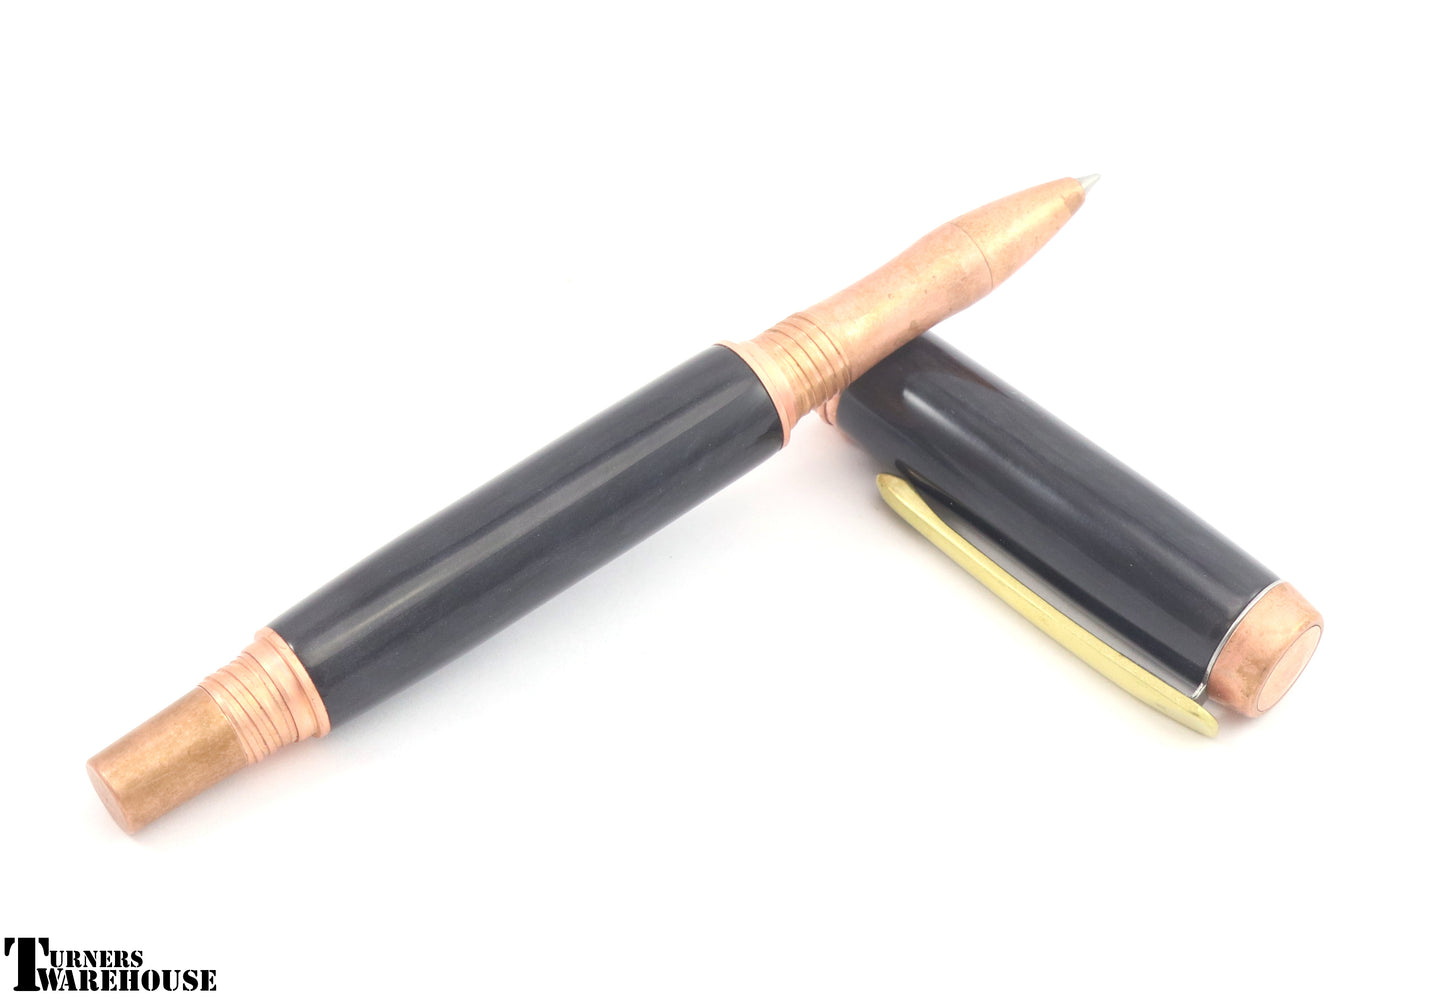  Element Series JR Series Pen Kit Copper